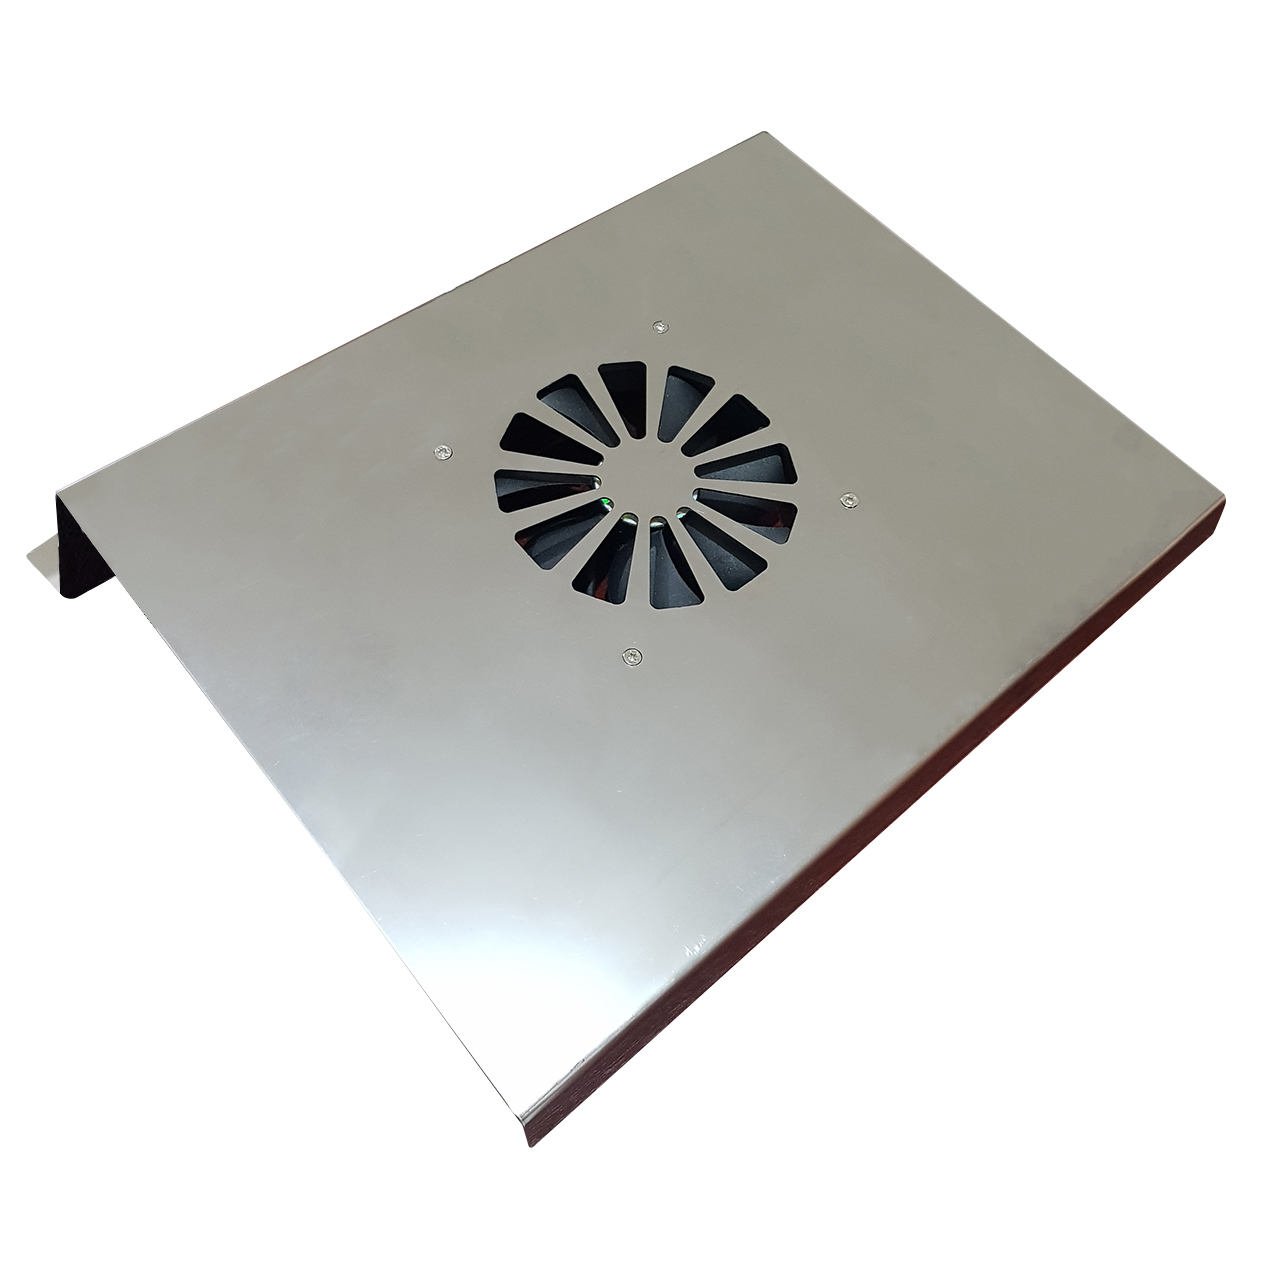 پایه خنک کننده لپ تاپ آیس کول مدل C700